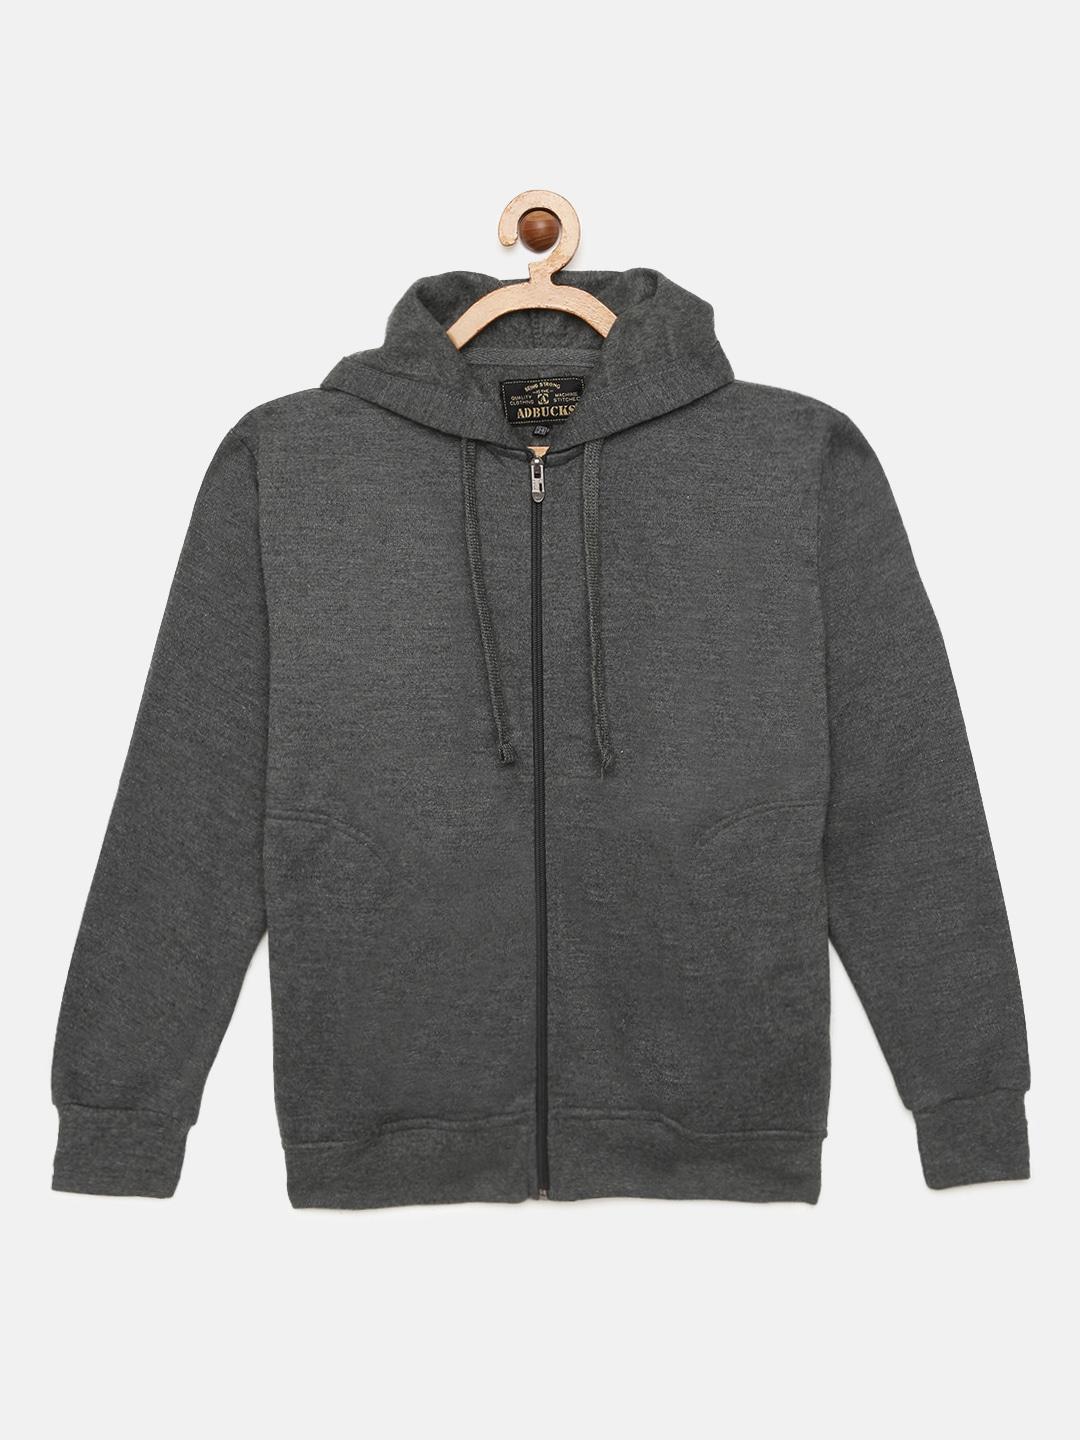 adbucks boys grey solid hooded sweatshirt